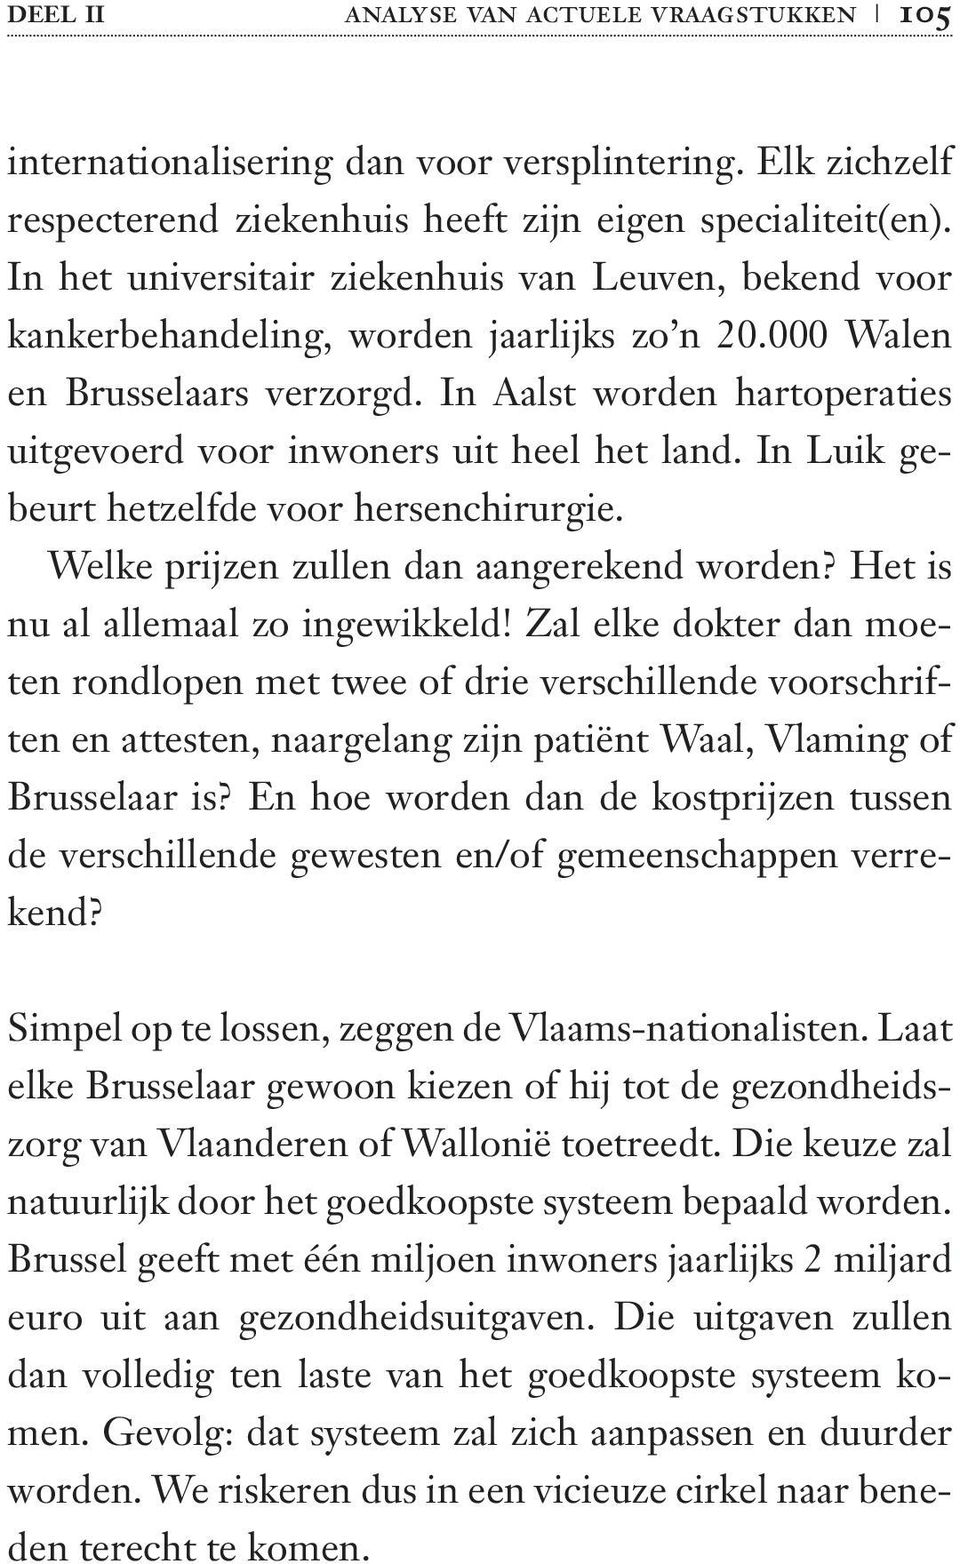 In Aalst worden hartoperaties uitgevoerd voor inwoners uit heel het land. In Luik gebeurt hetzelfde voor hersenchirurgie. Welke prijzen zullen dan aangerekend worden?